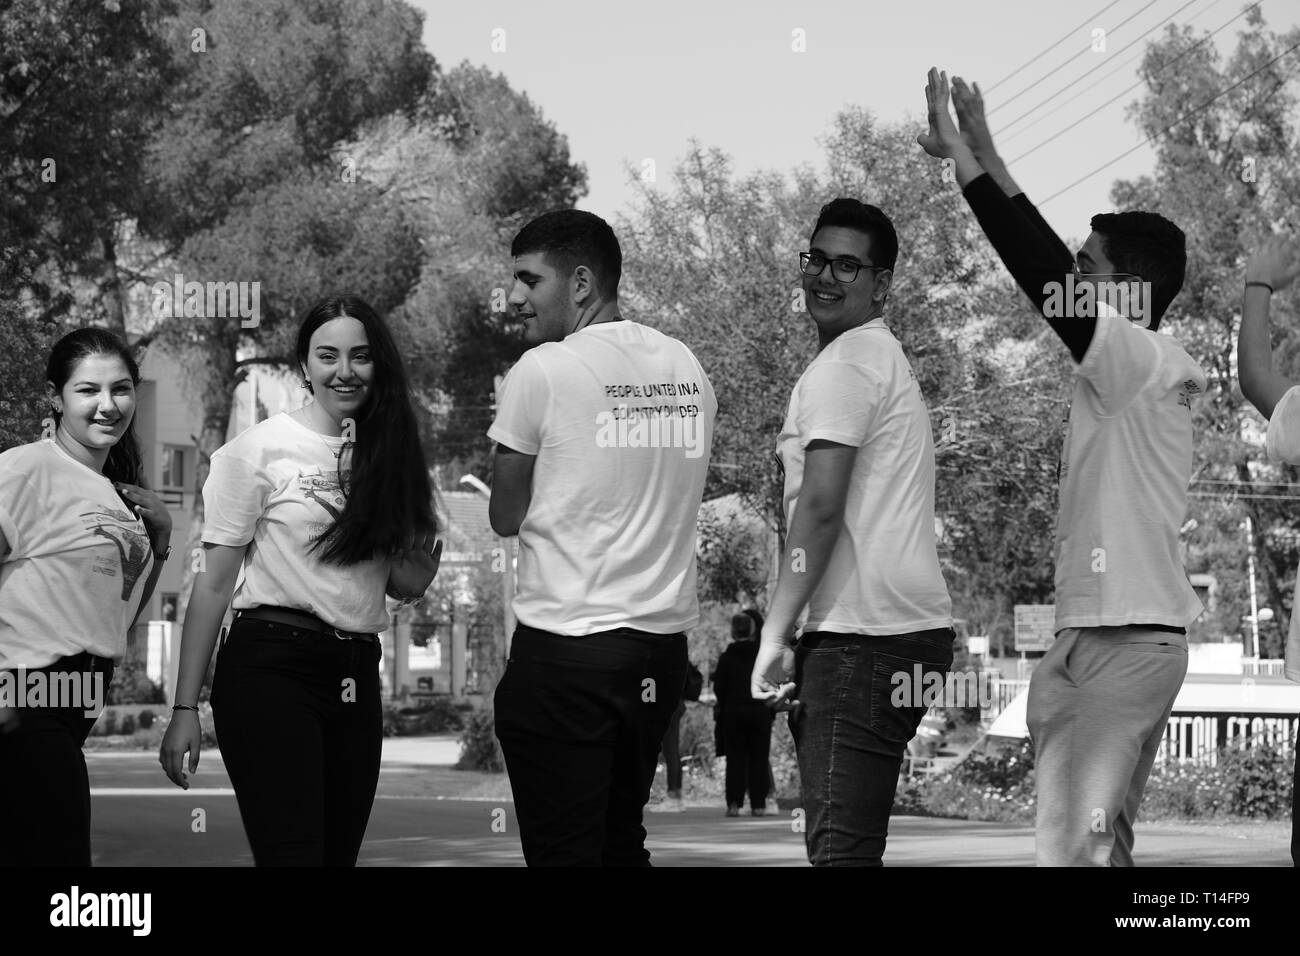 L'Amitié Chypre bicommunautaire Programme vise à créer des liens d'amitié et de confiance entre les jeunes des communautés de Chypre. Banque D'Images